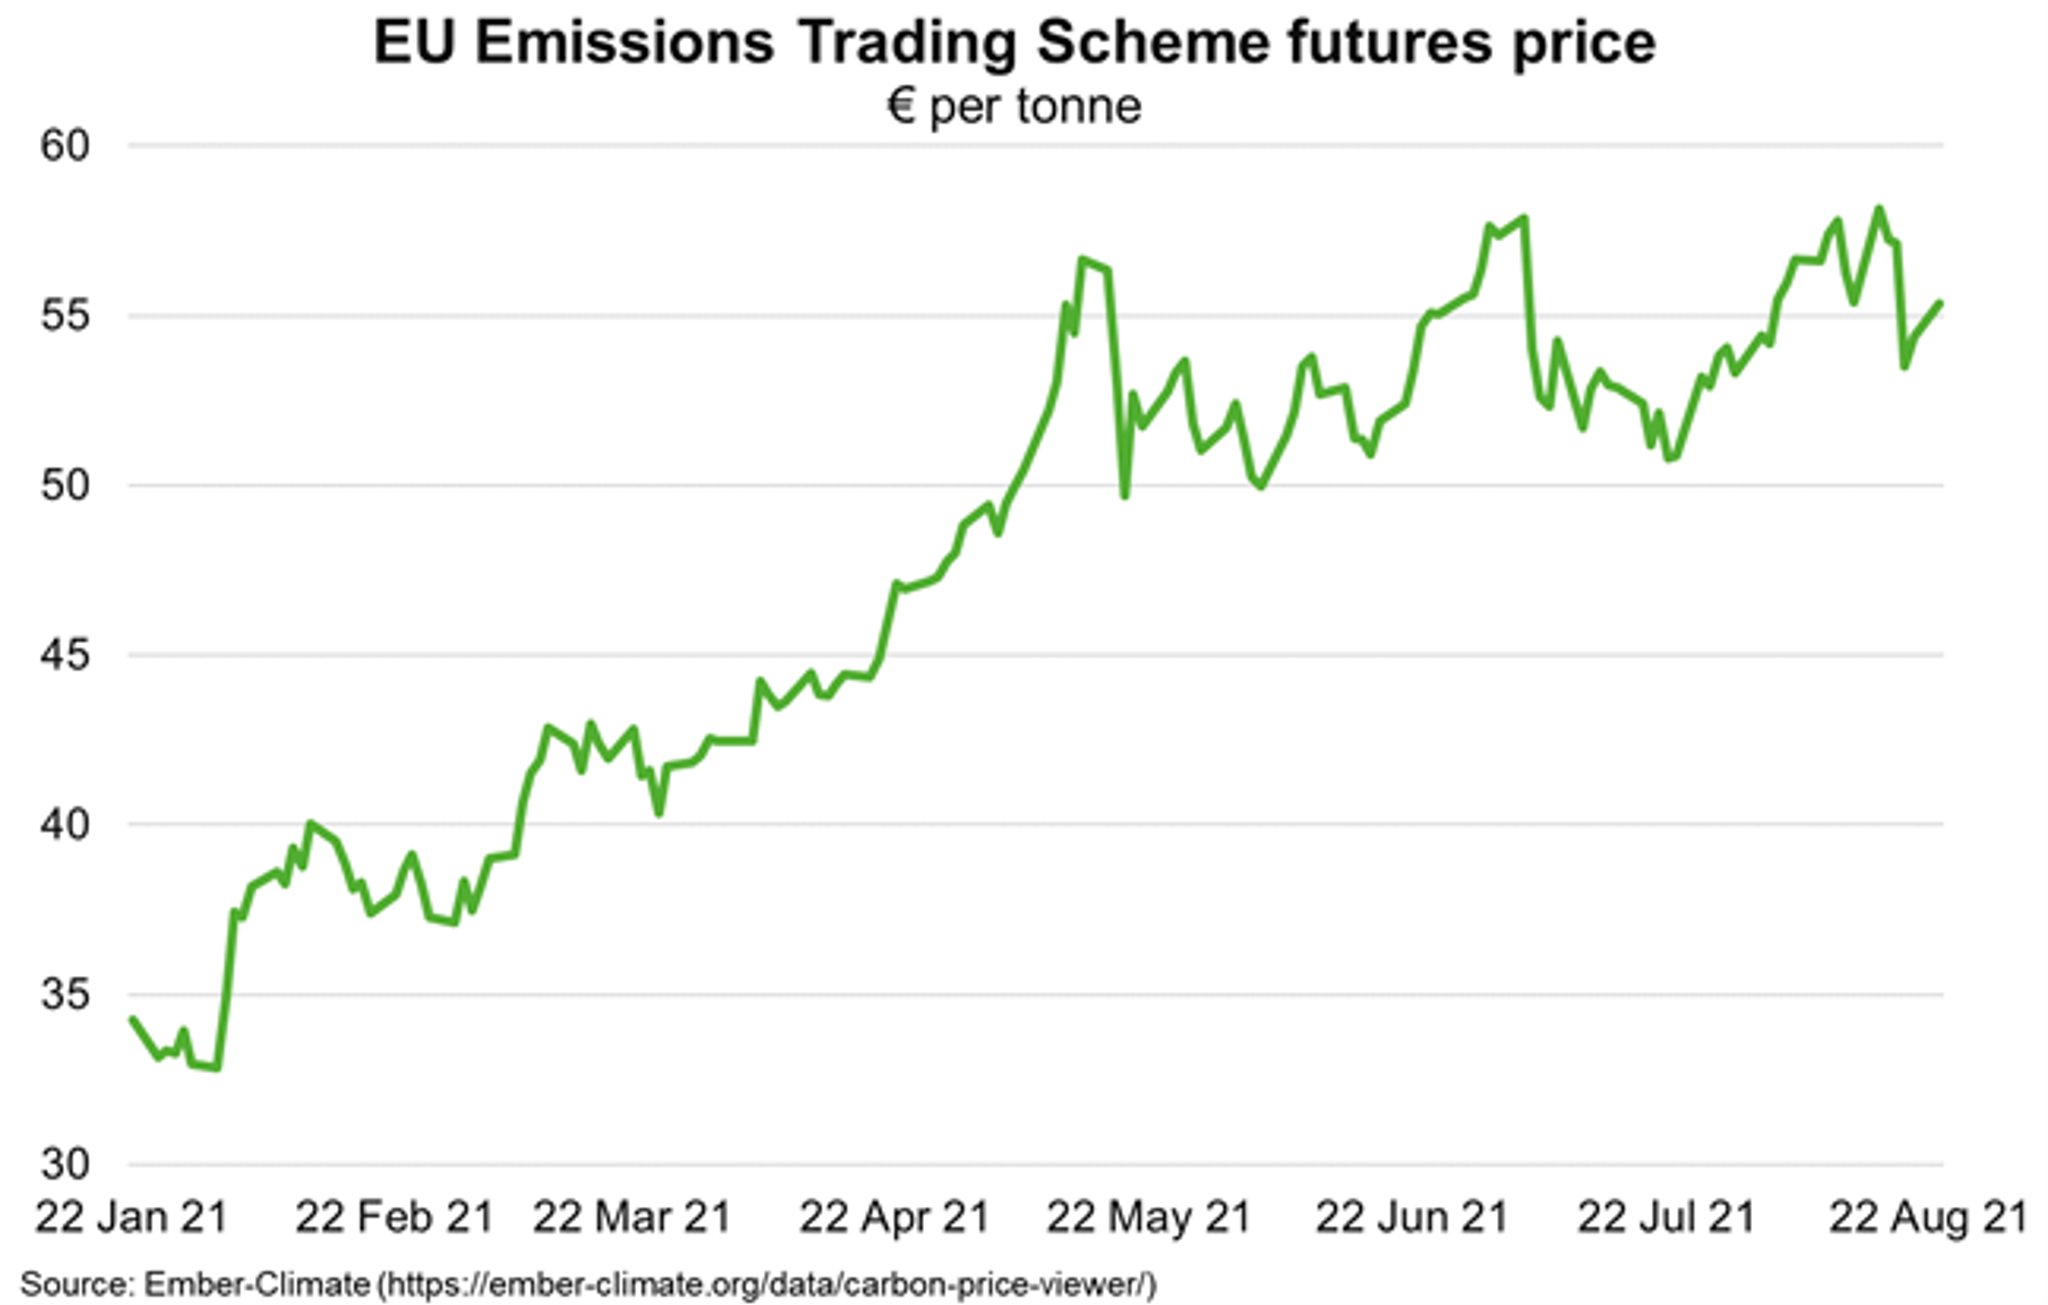 Fig 5 EU Emissions Trading Scheme Future Price